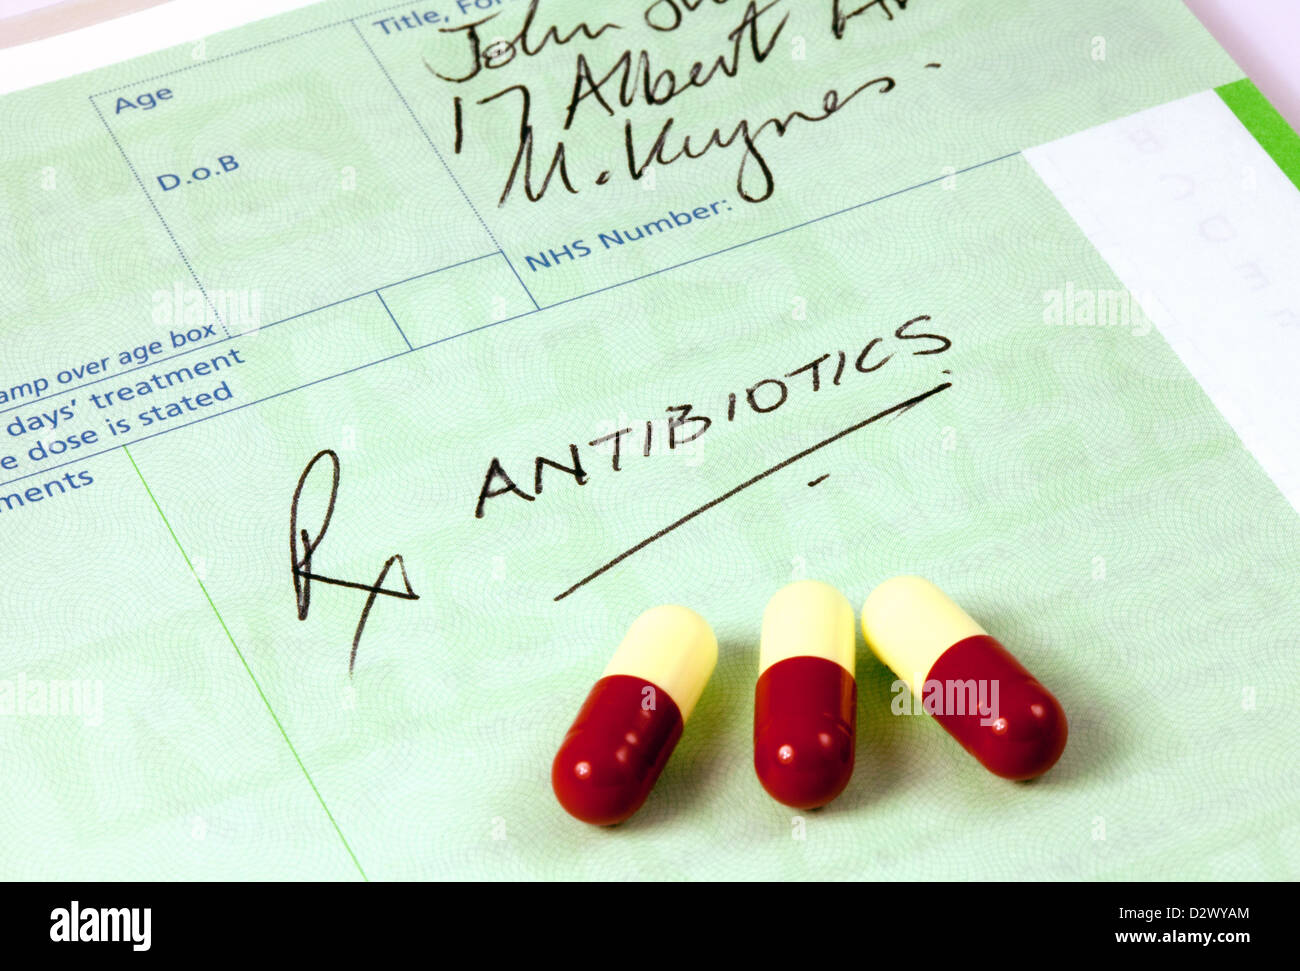 Una receta para antibióticos del NHS, con amoxicilina medicamentos antibióticos medicina, Inglaterra Foto de stock